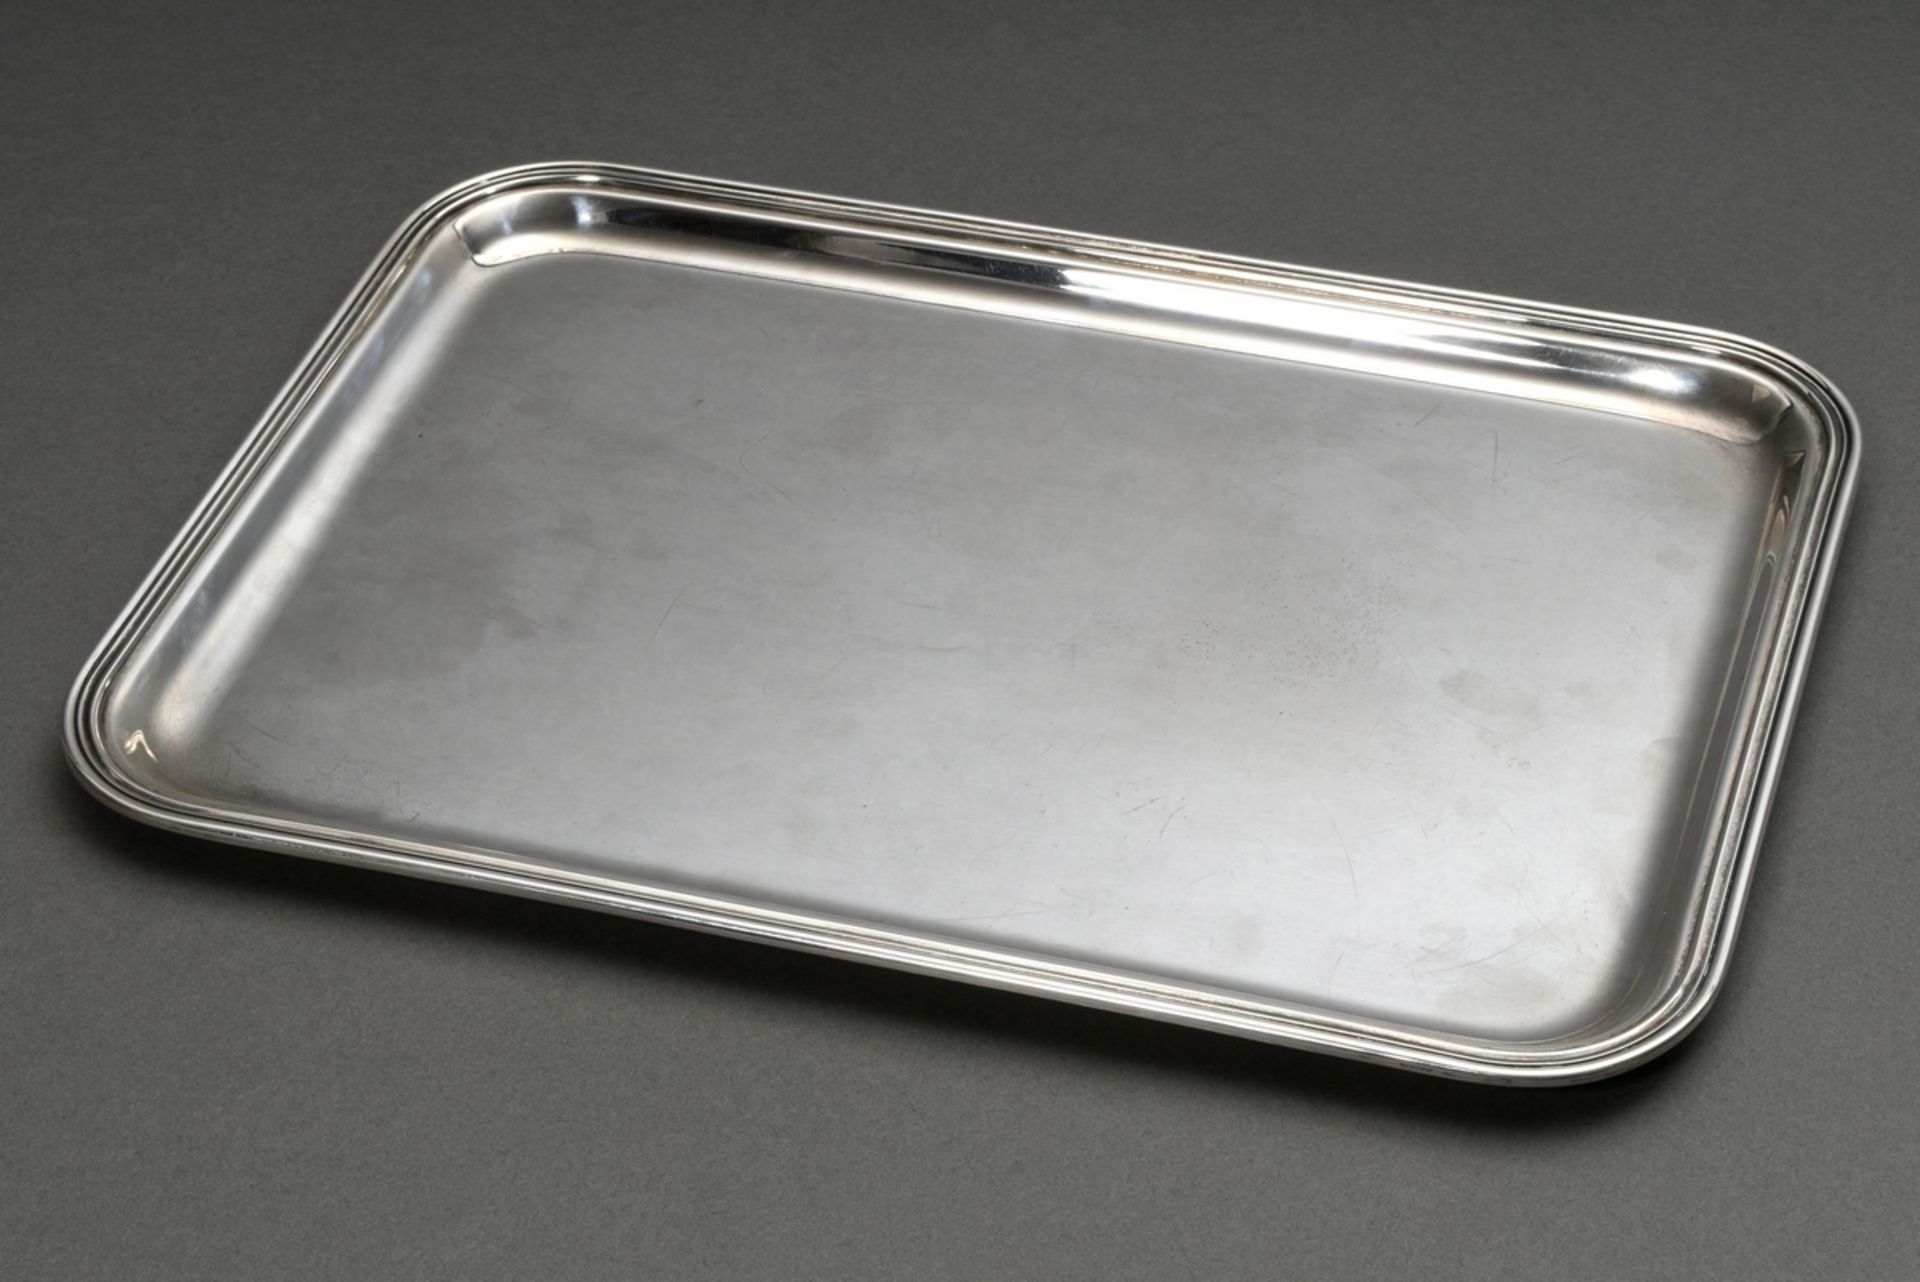 Rechteckiges Tablett in schlichter Façon, Silber 800, 745g, 36x26cm